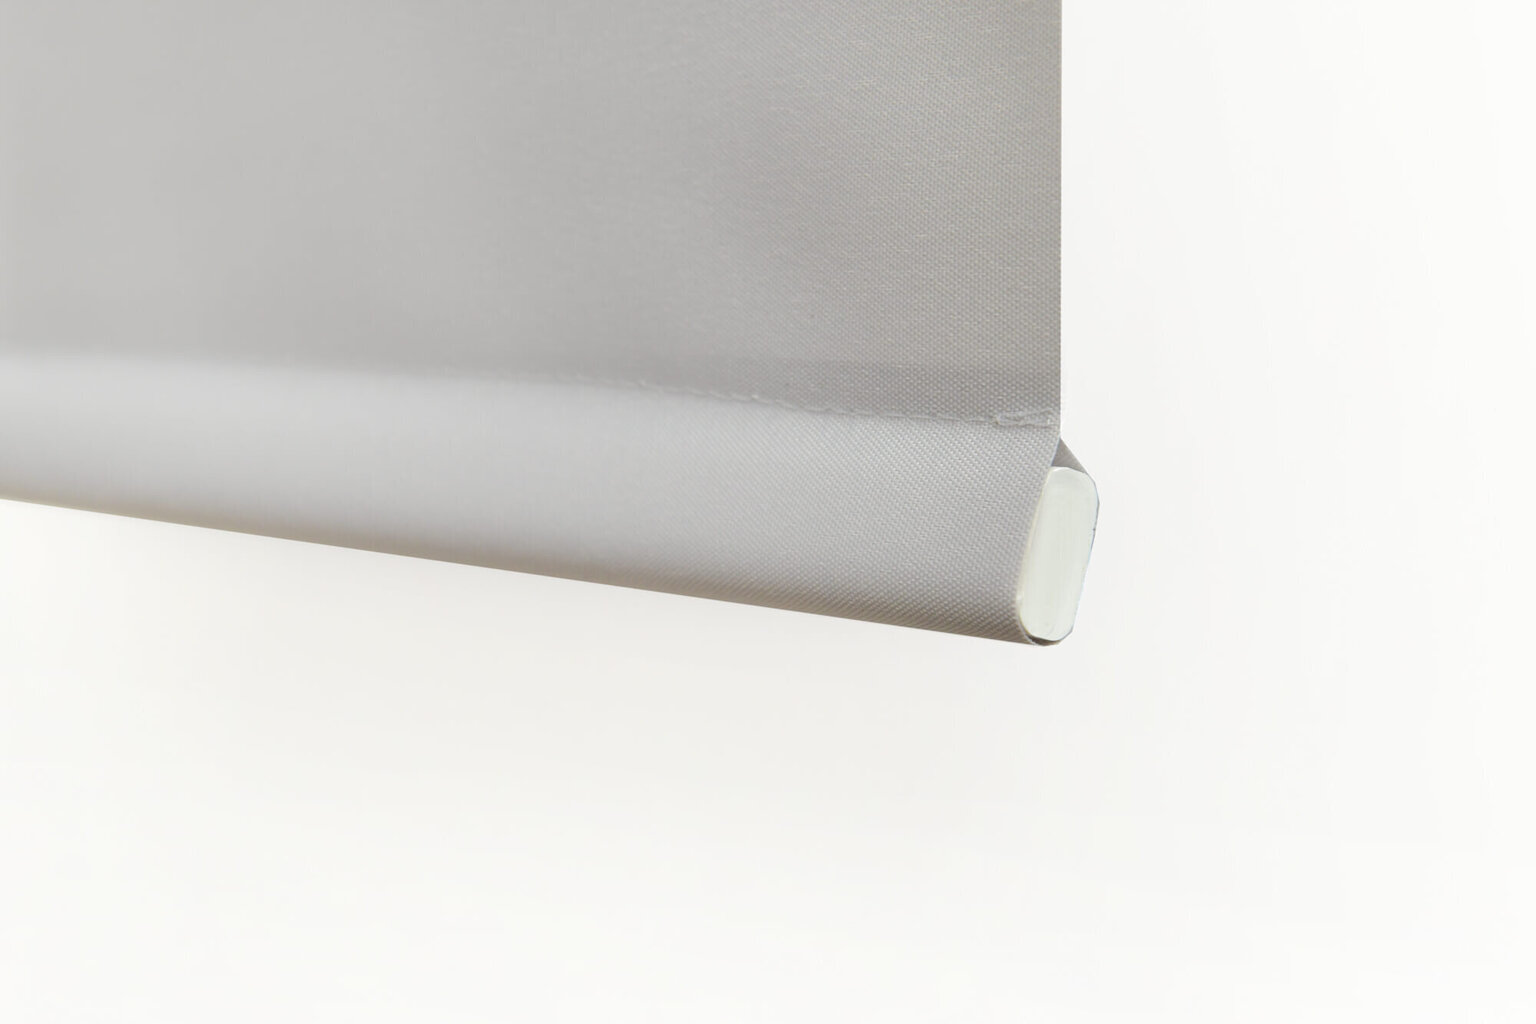 Sieninis roletas su audiniu Dekor 170x170 cm, d-01 balta kaina ir informacija | Roletai | pigu.lt